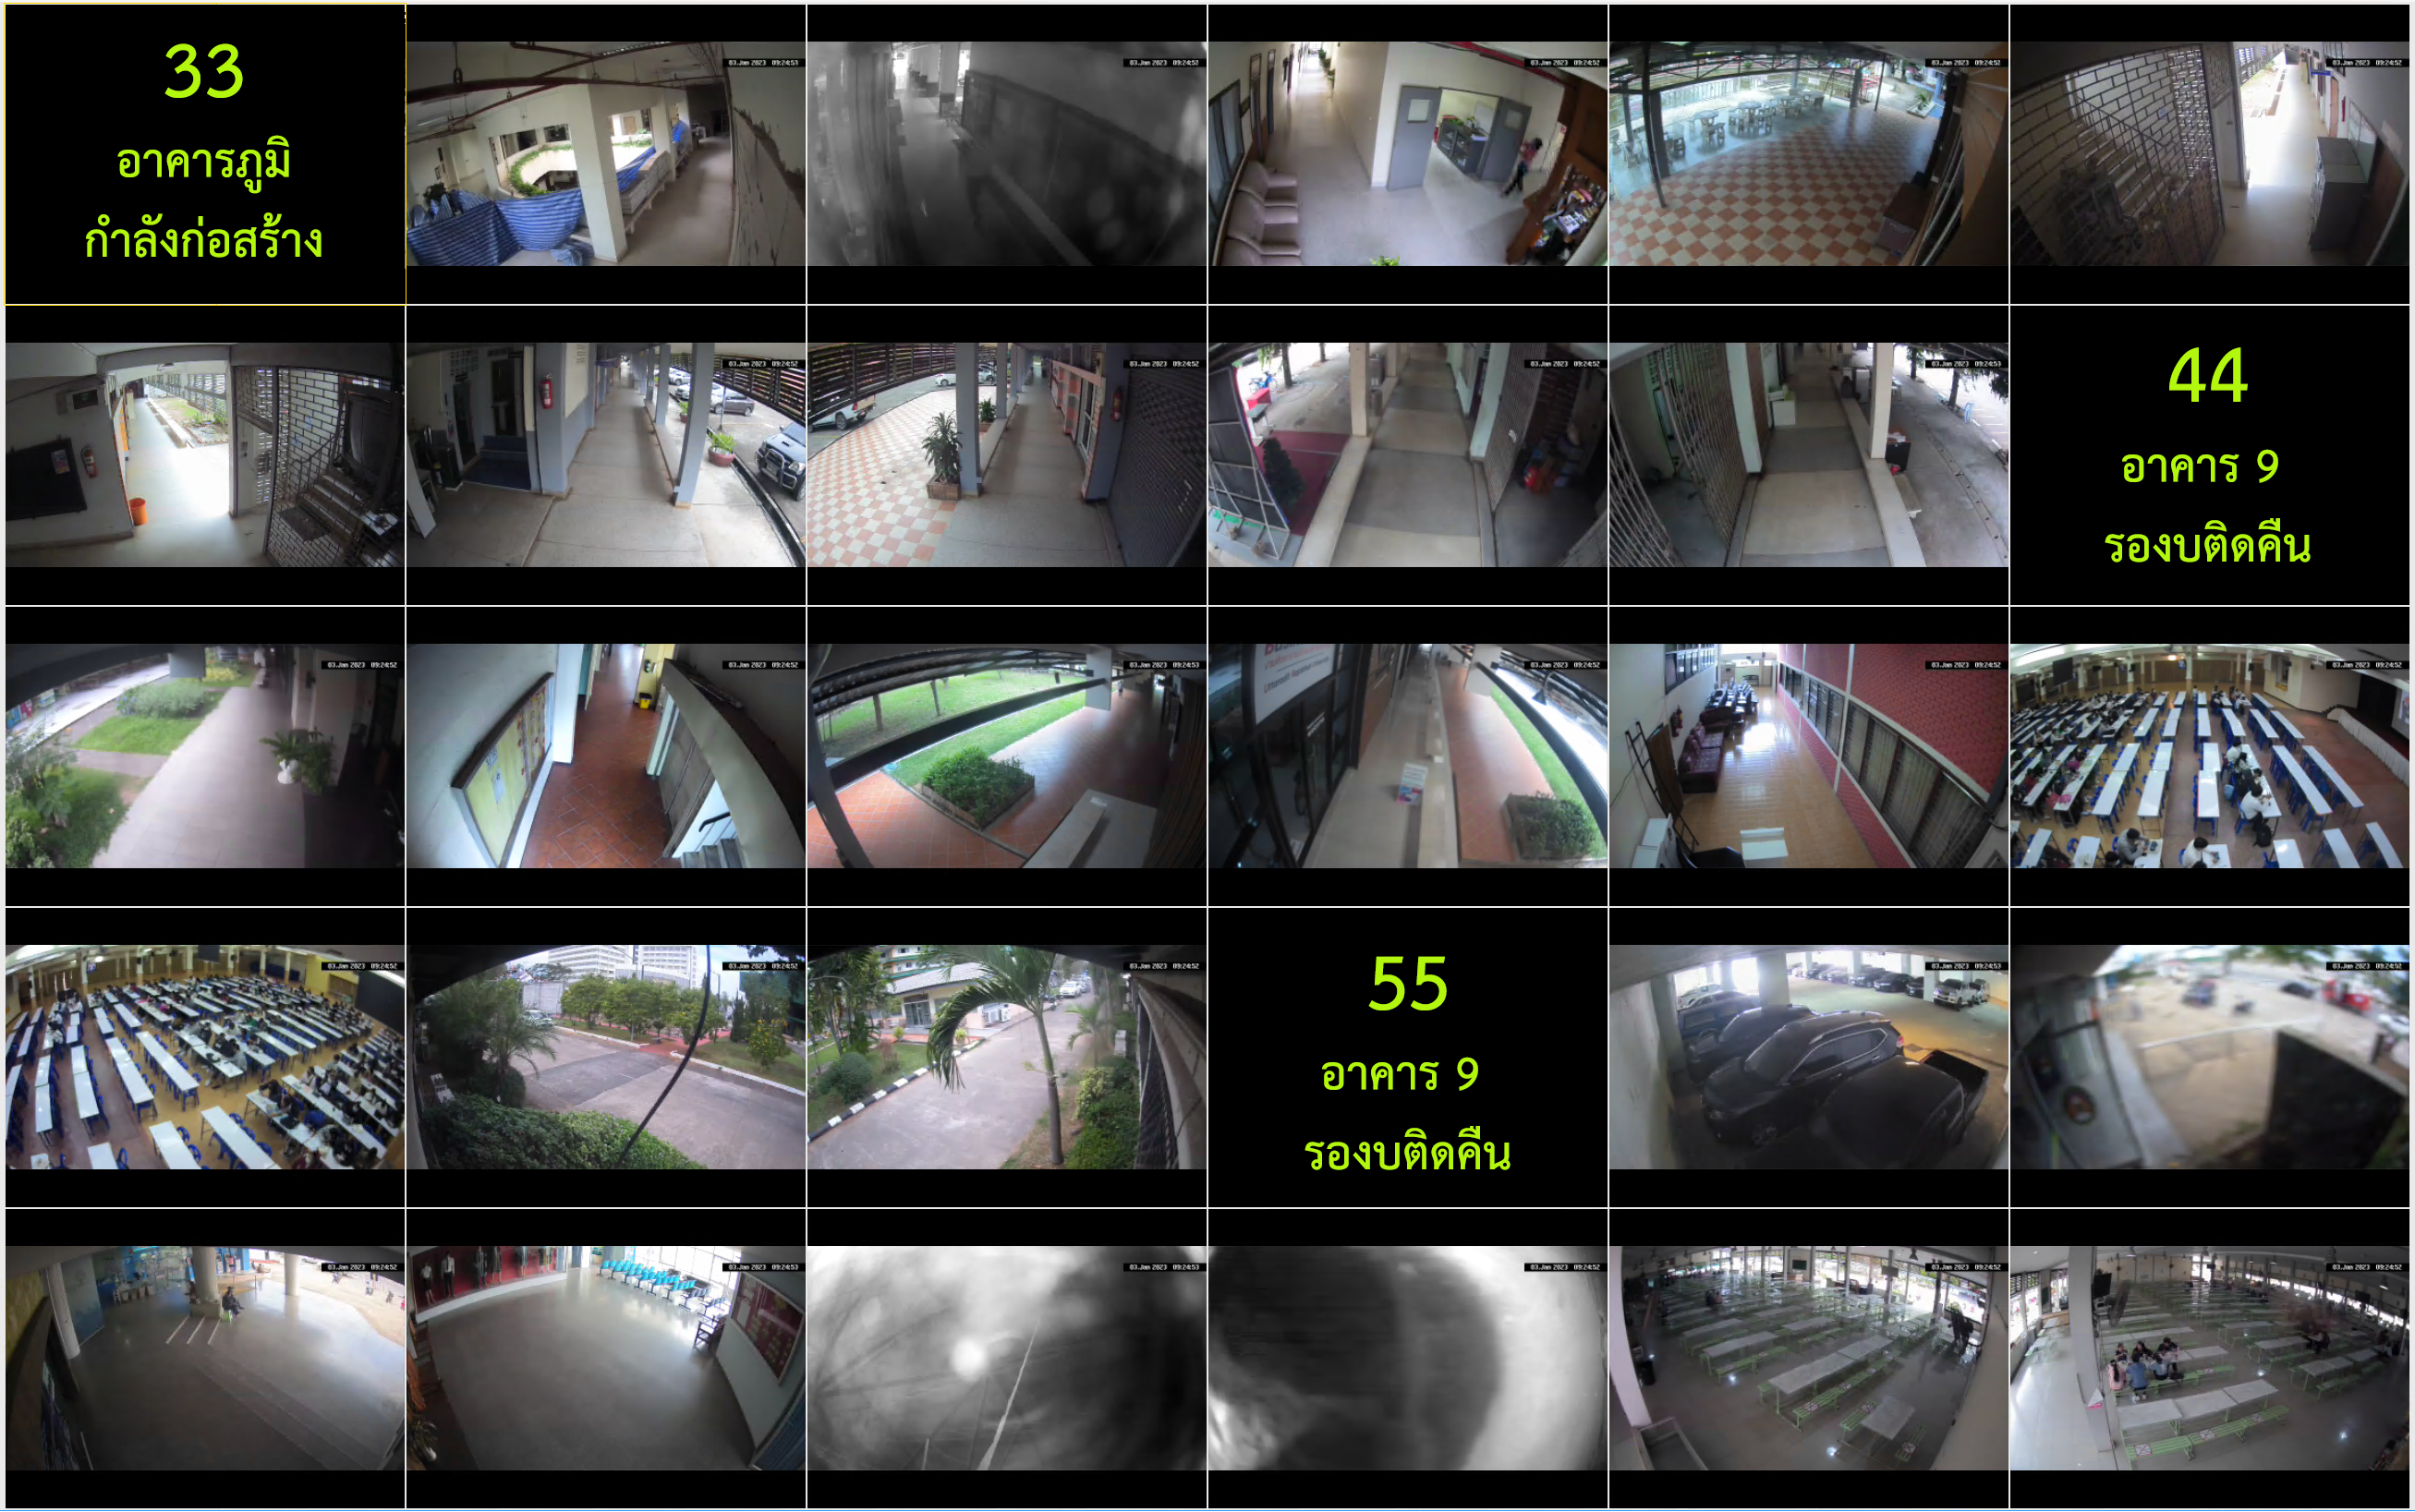 A-mark-CCTV-33-63-2023-01-03-092421